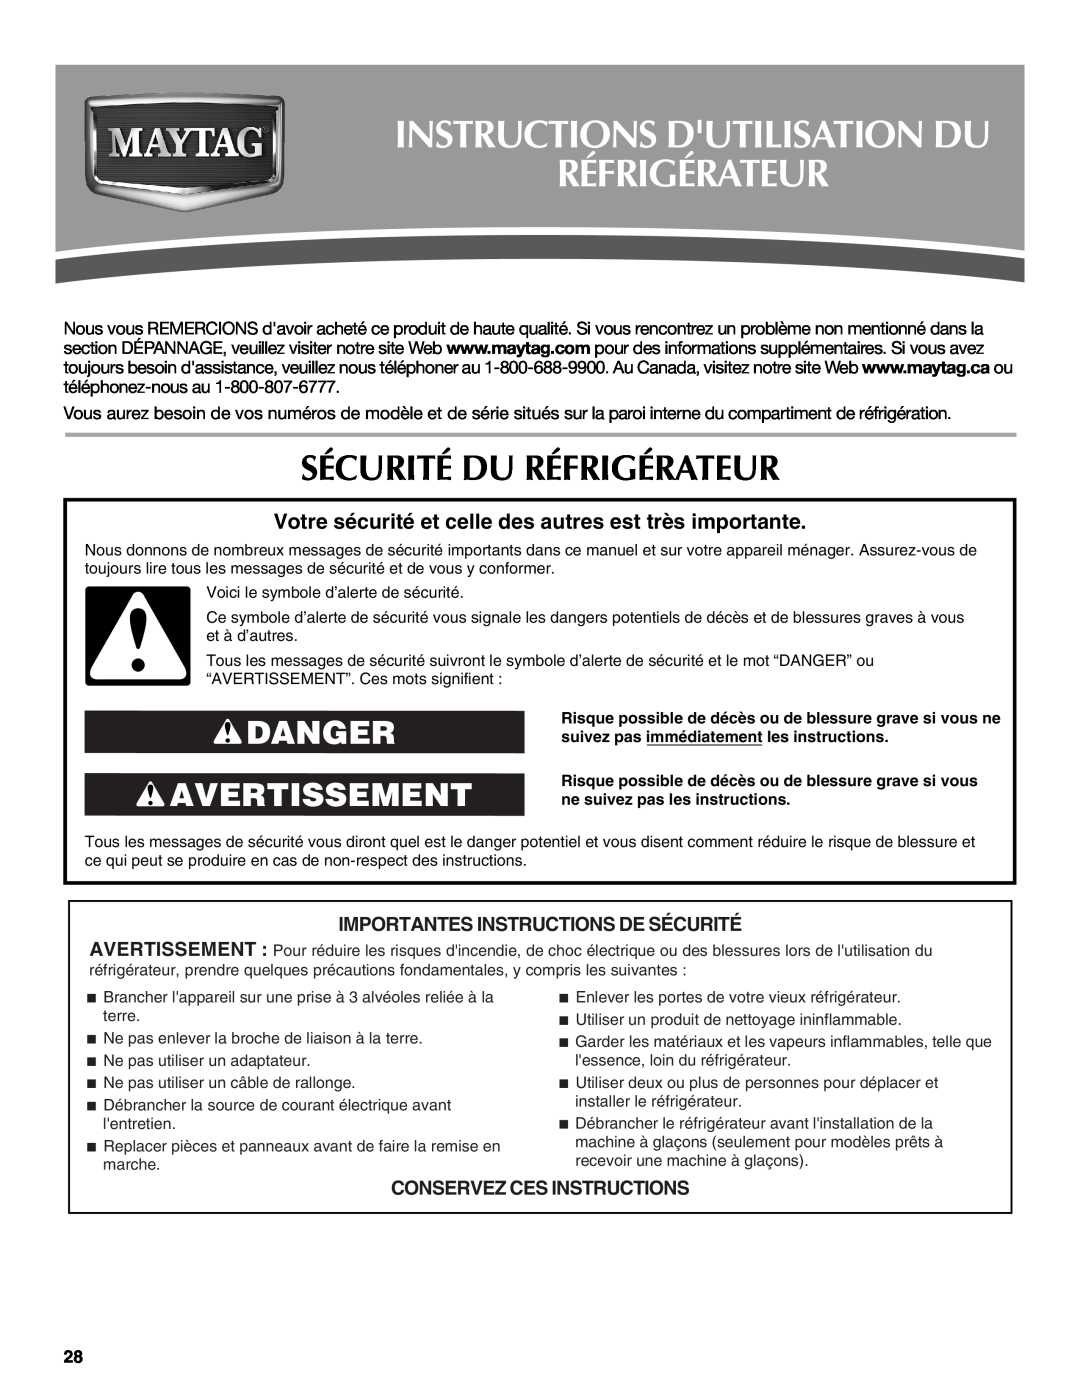 Maytag MTB2254EEW Instructions Dutilisation Du Réfrigérateur, Sécurité Du Réfrigérateur, Danger Avertissement 